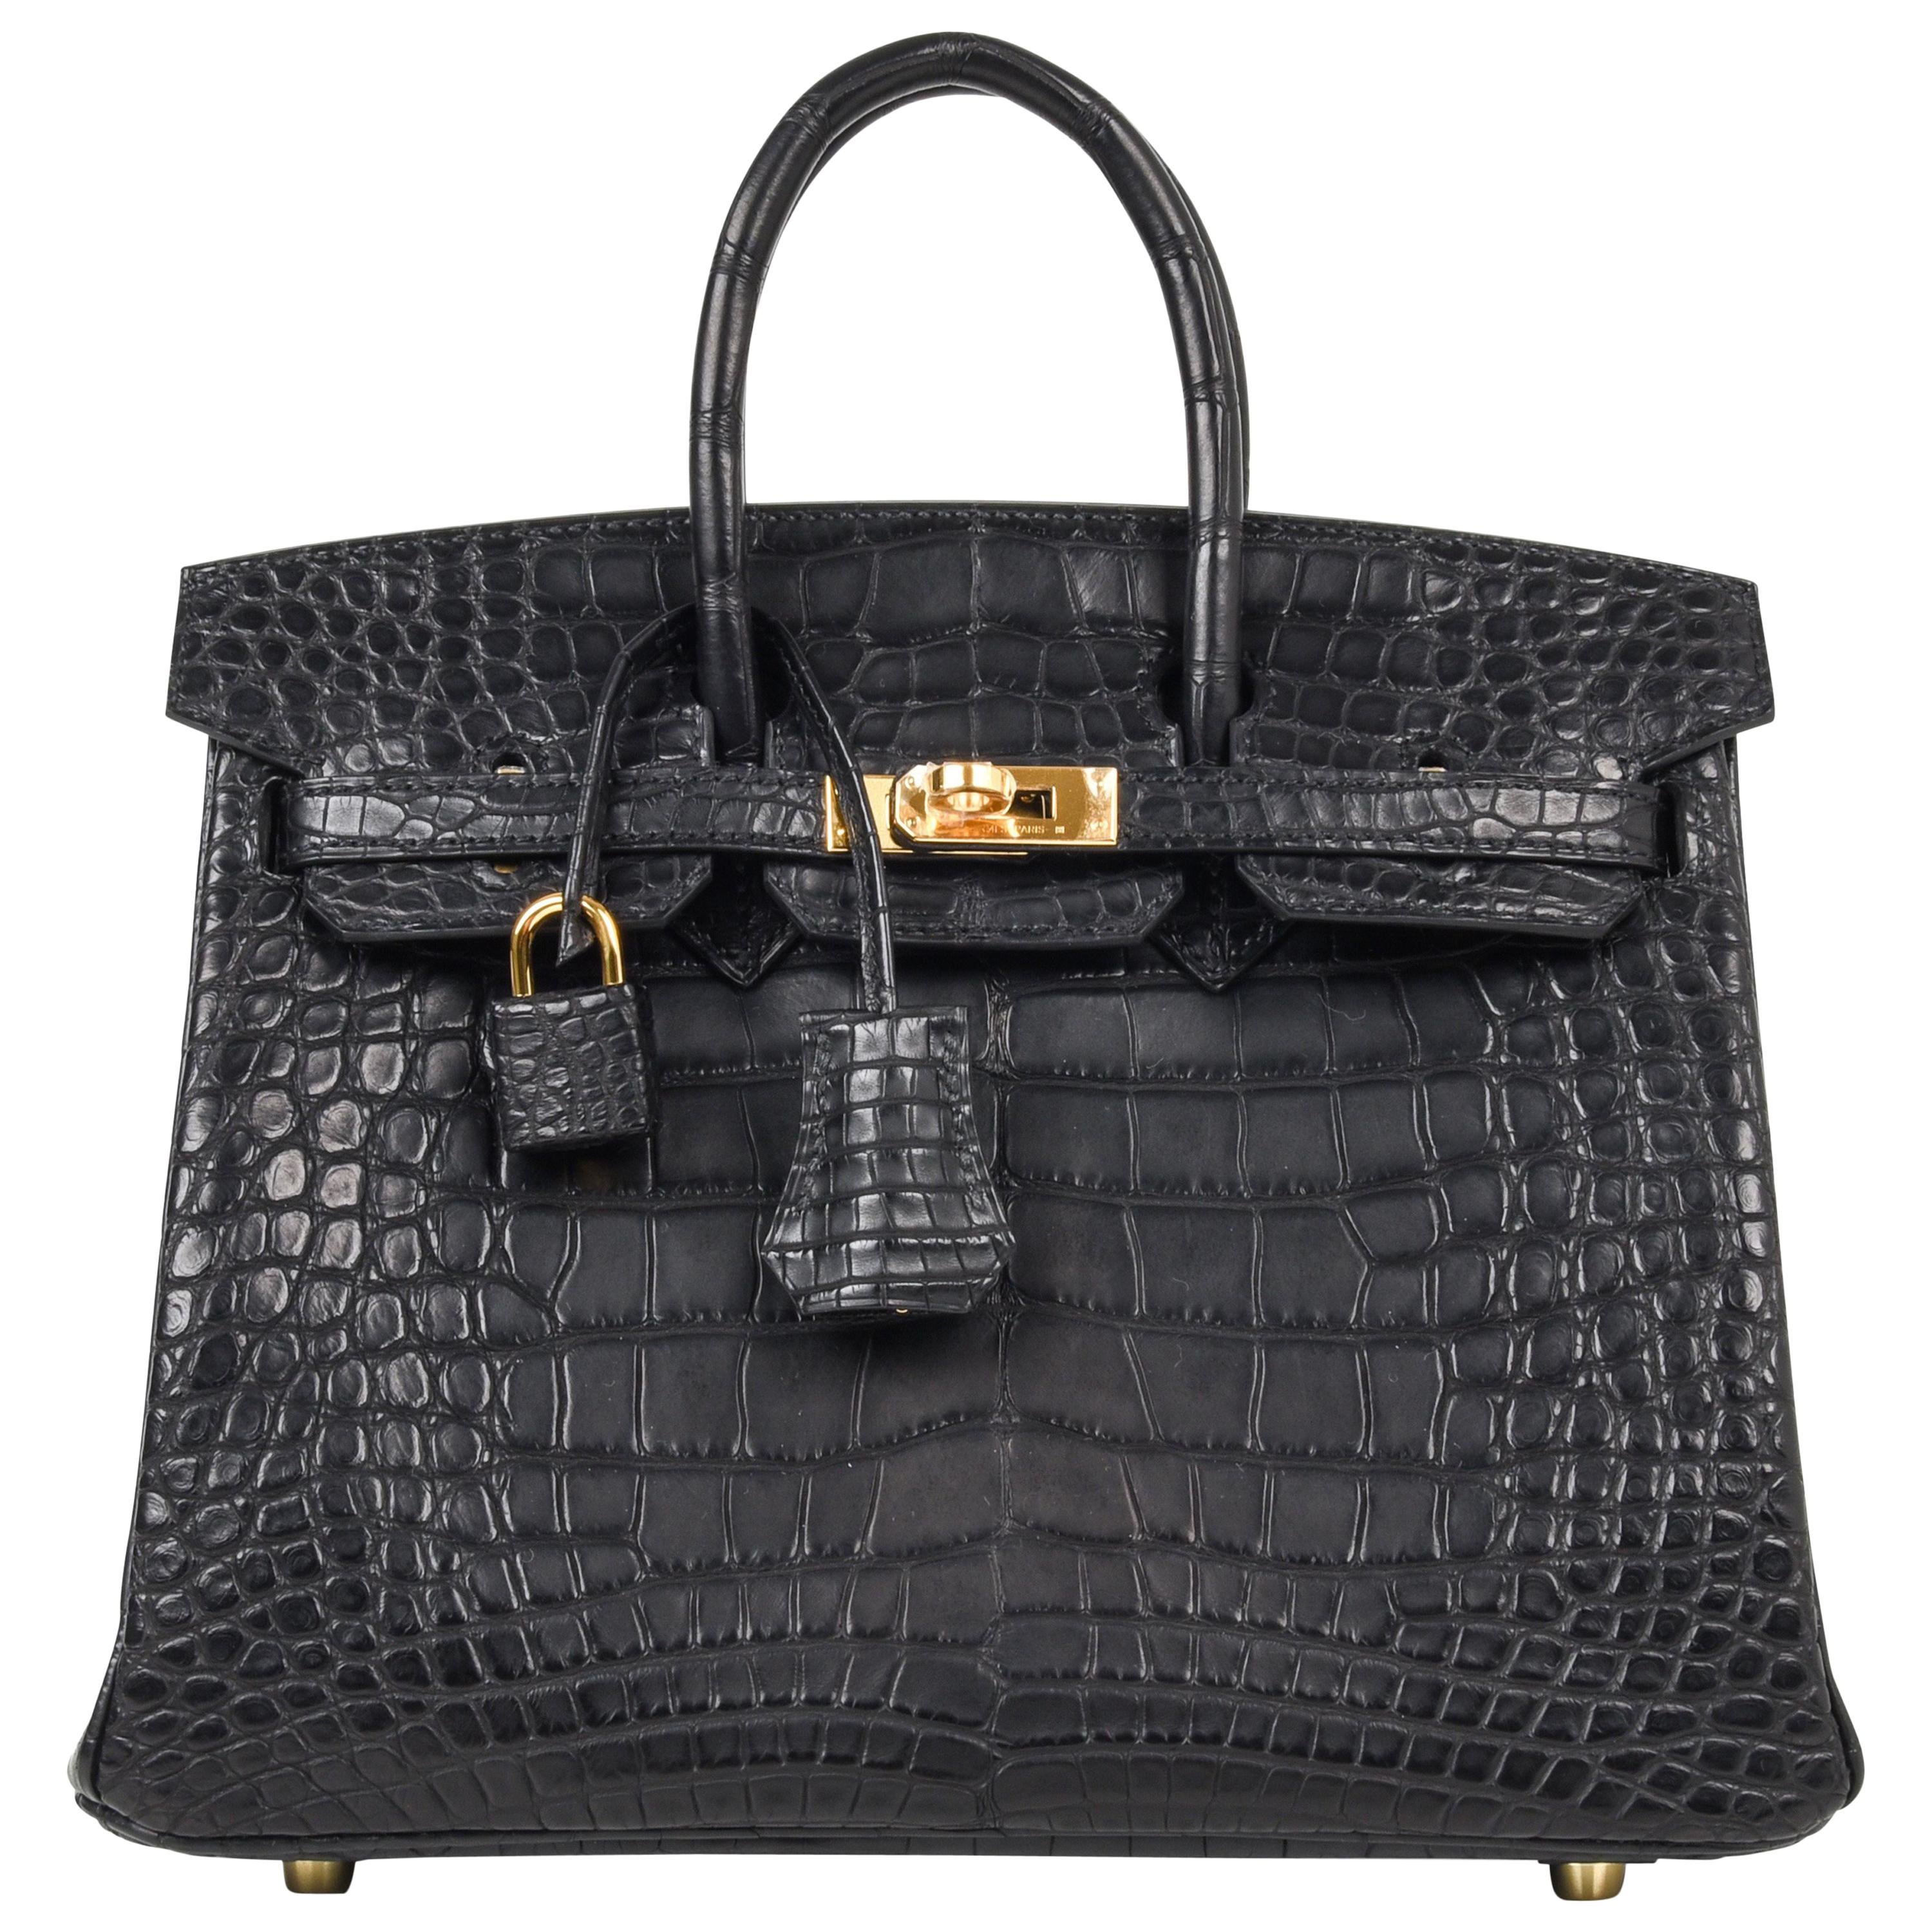 Jennifer Lopez Hermes Birkin crocodile bag black